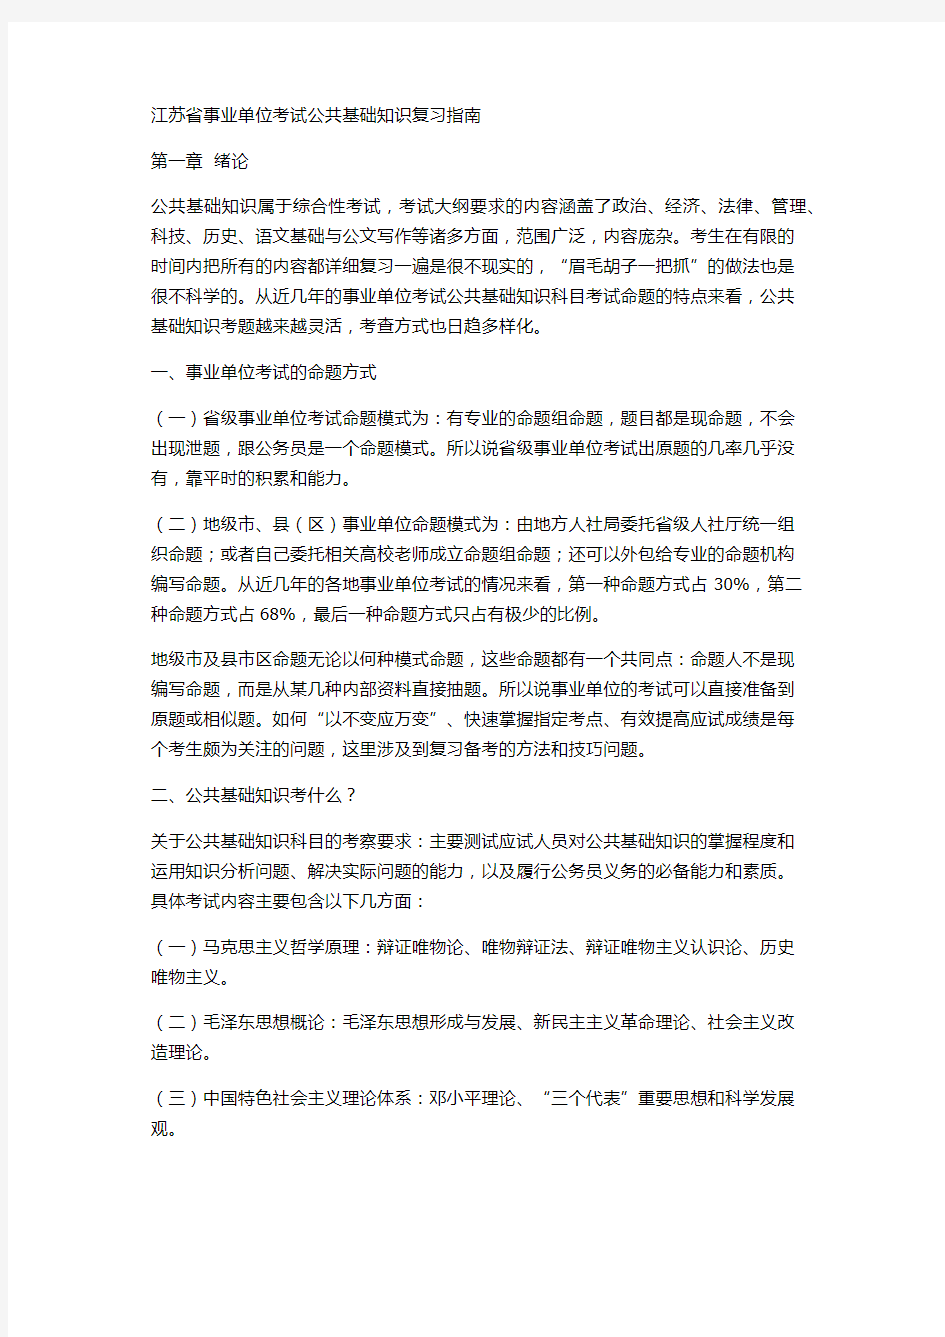 江苏省事业单位考试公共基础知识复习指南 (1)0204192236